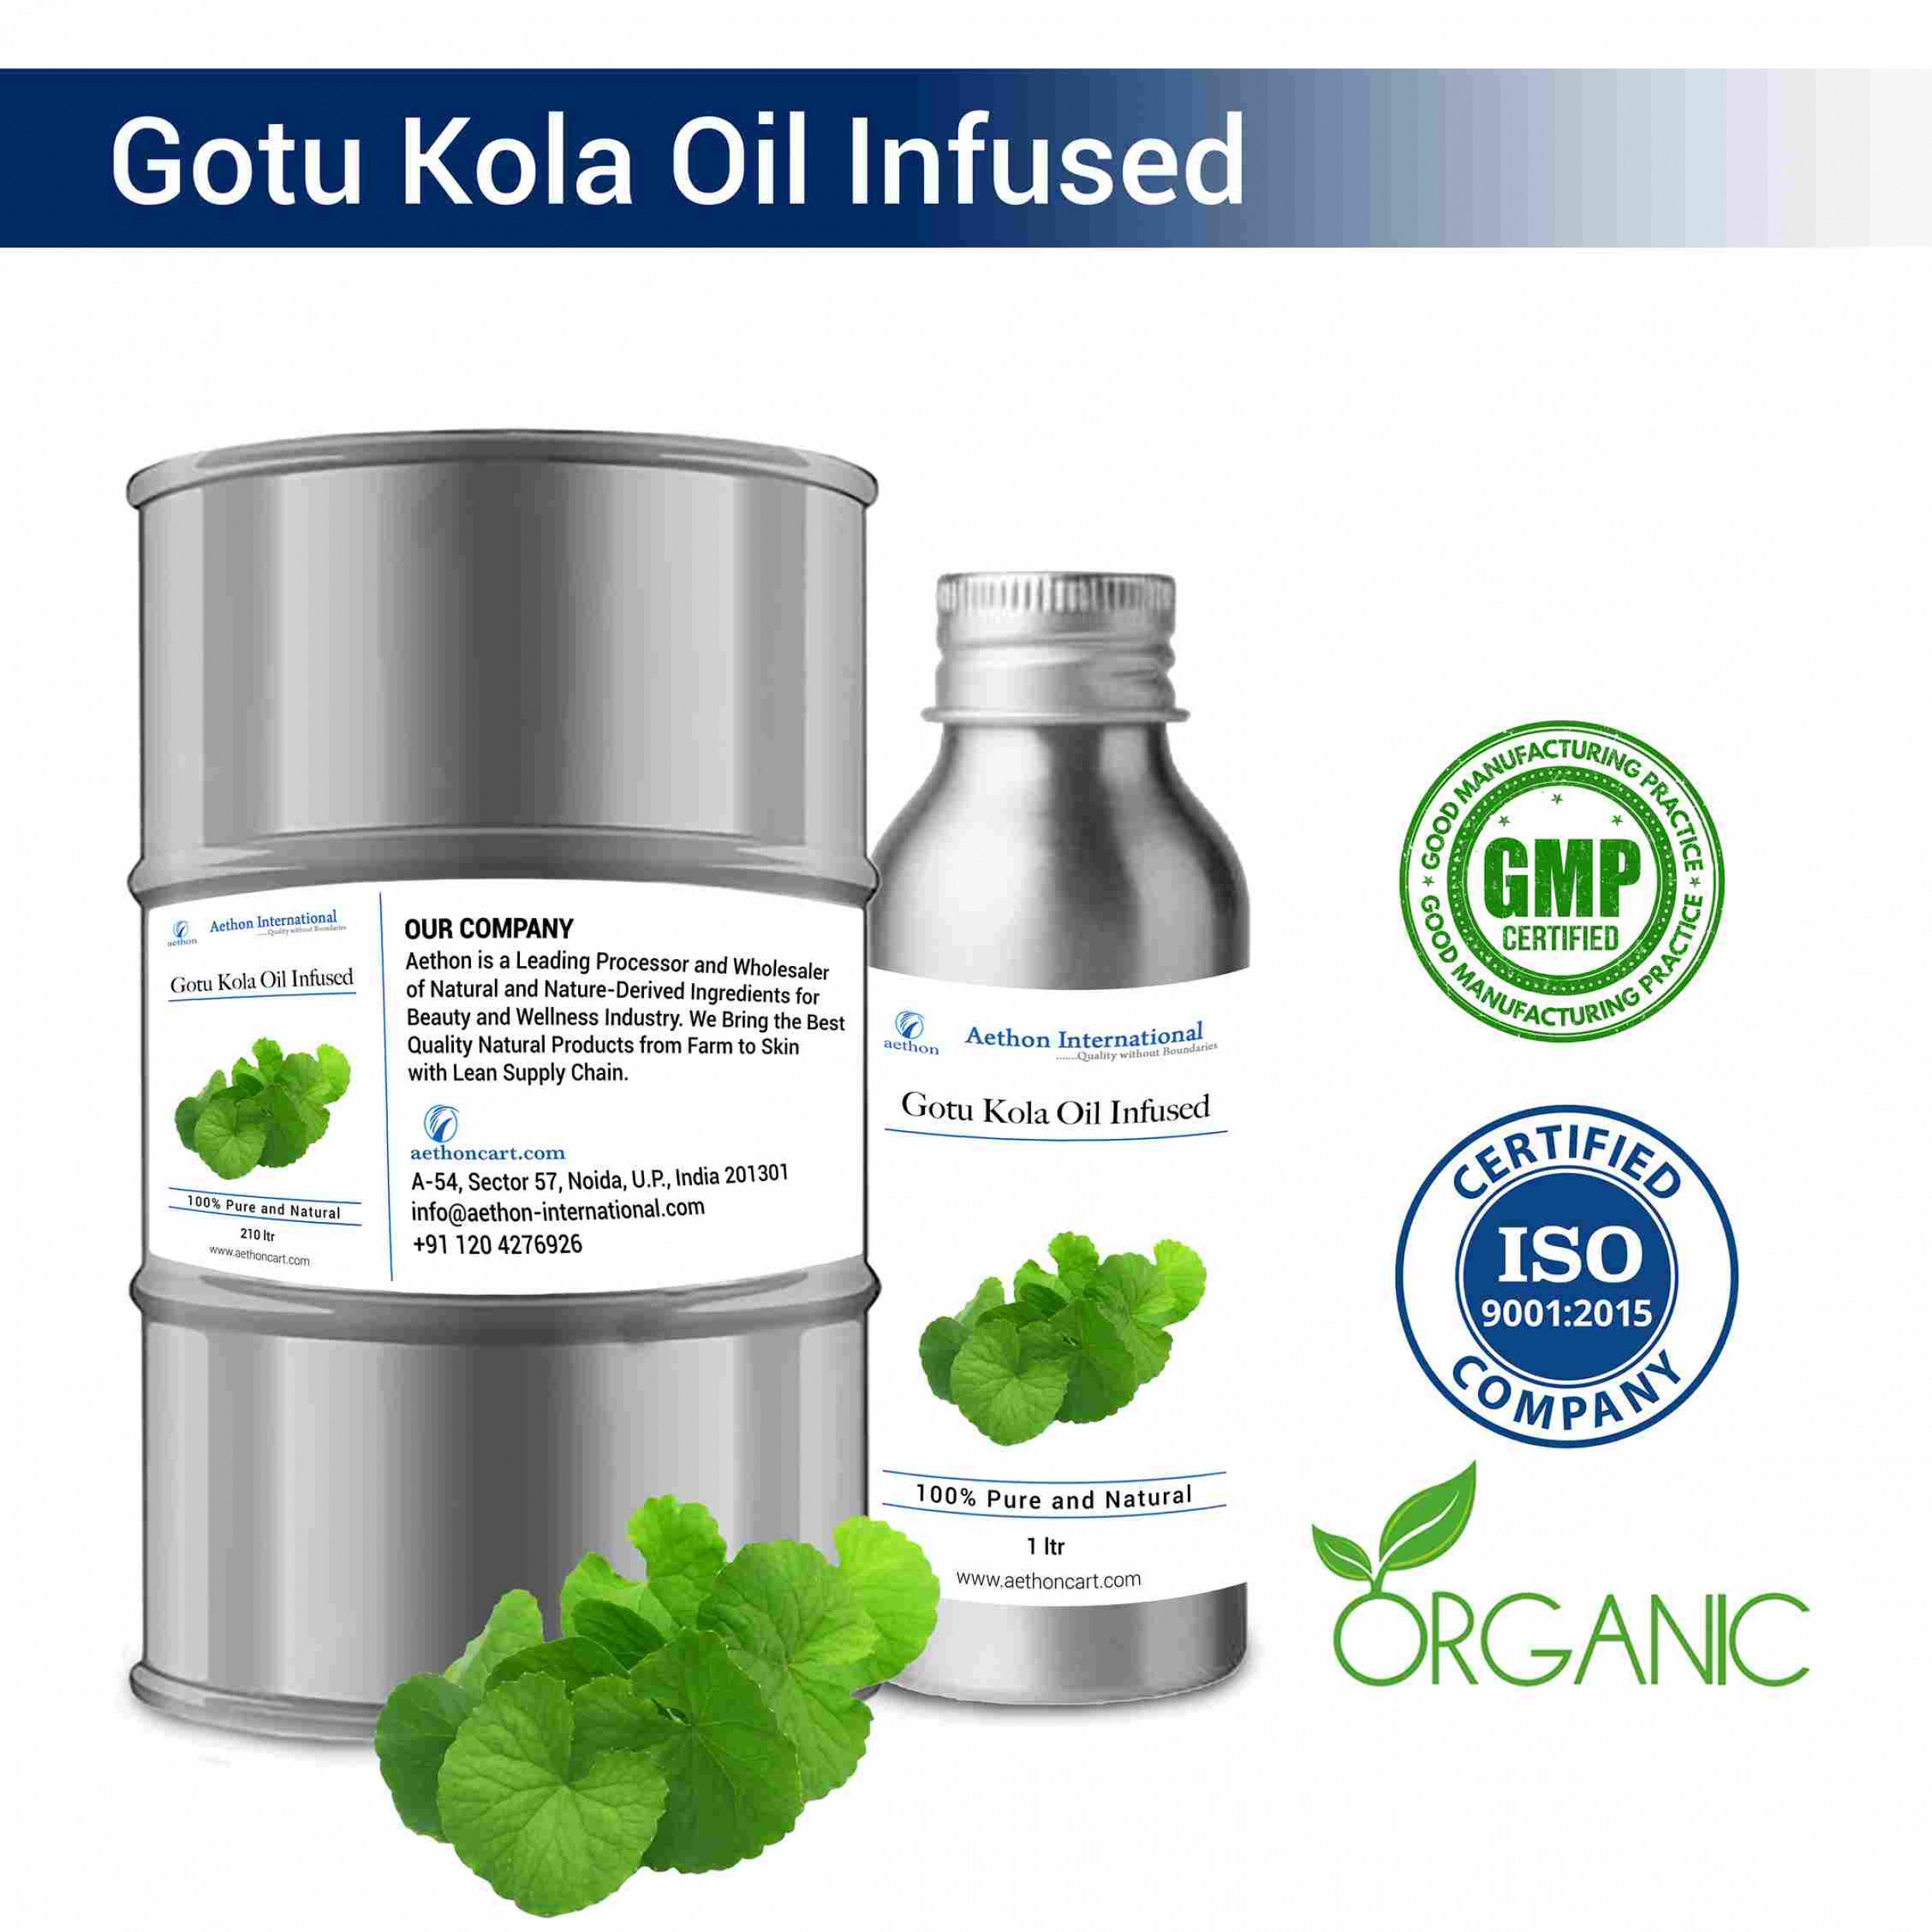 Gotu Kola Oil Infused